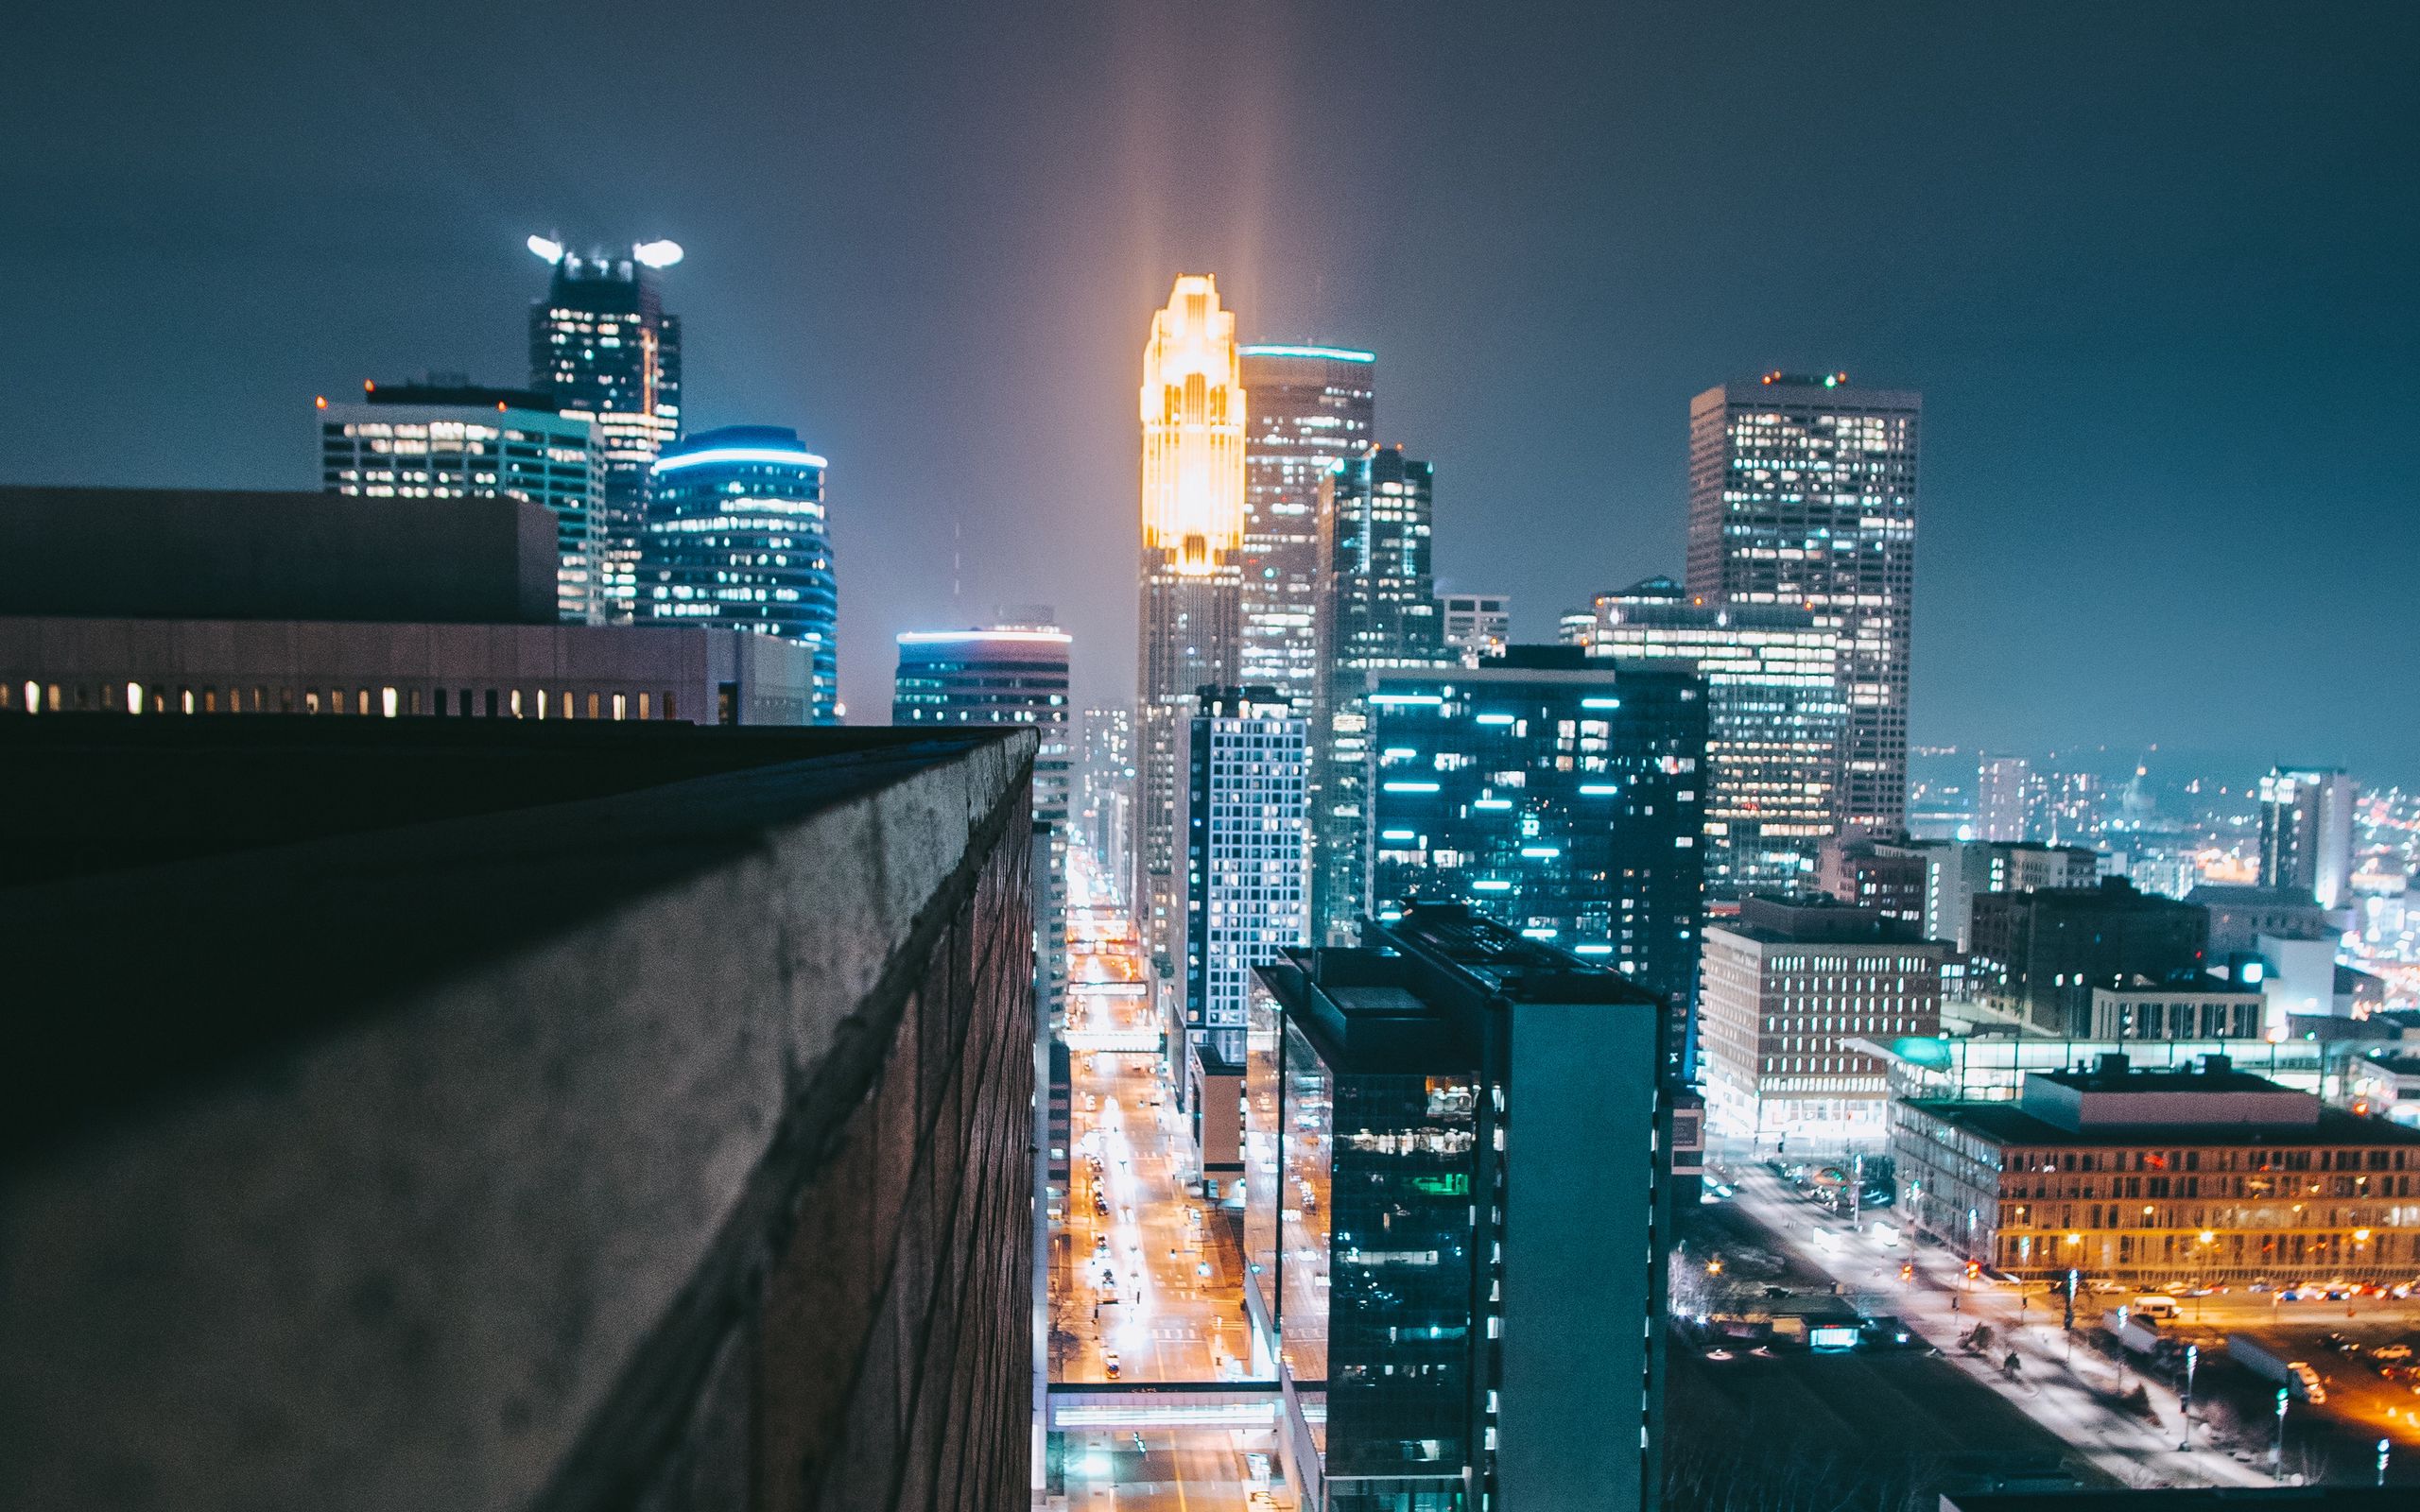 Ночной город вид с крыши